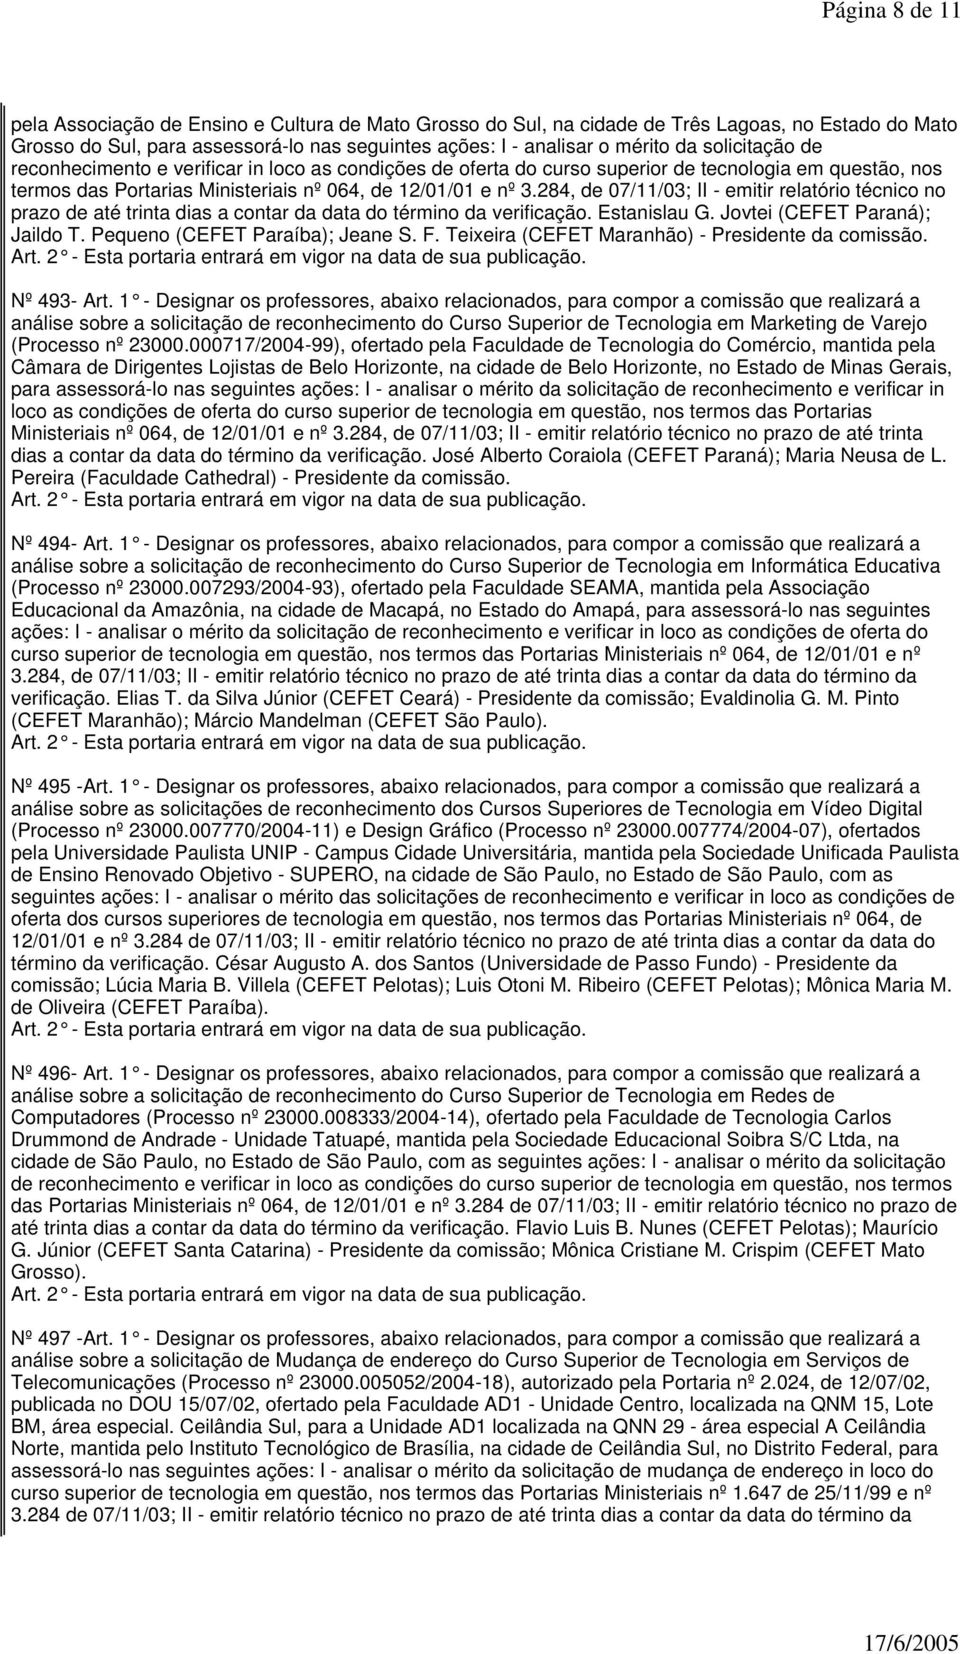 284, de 07/11/03; II - emitir relatório técnico no prazo de até trinta dias a contar da data do término da verificação. Estanislau G. Jovtei (CEFET Paraná); Jaildo T. Pequeno (CEFET Paraíba); Jeane S.